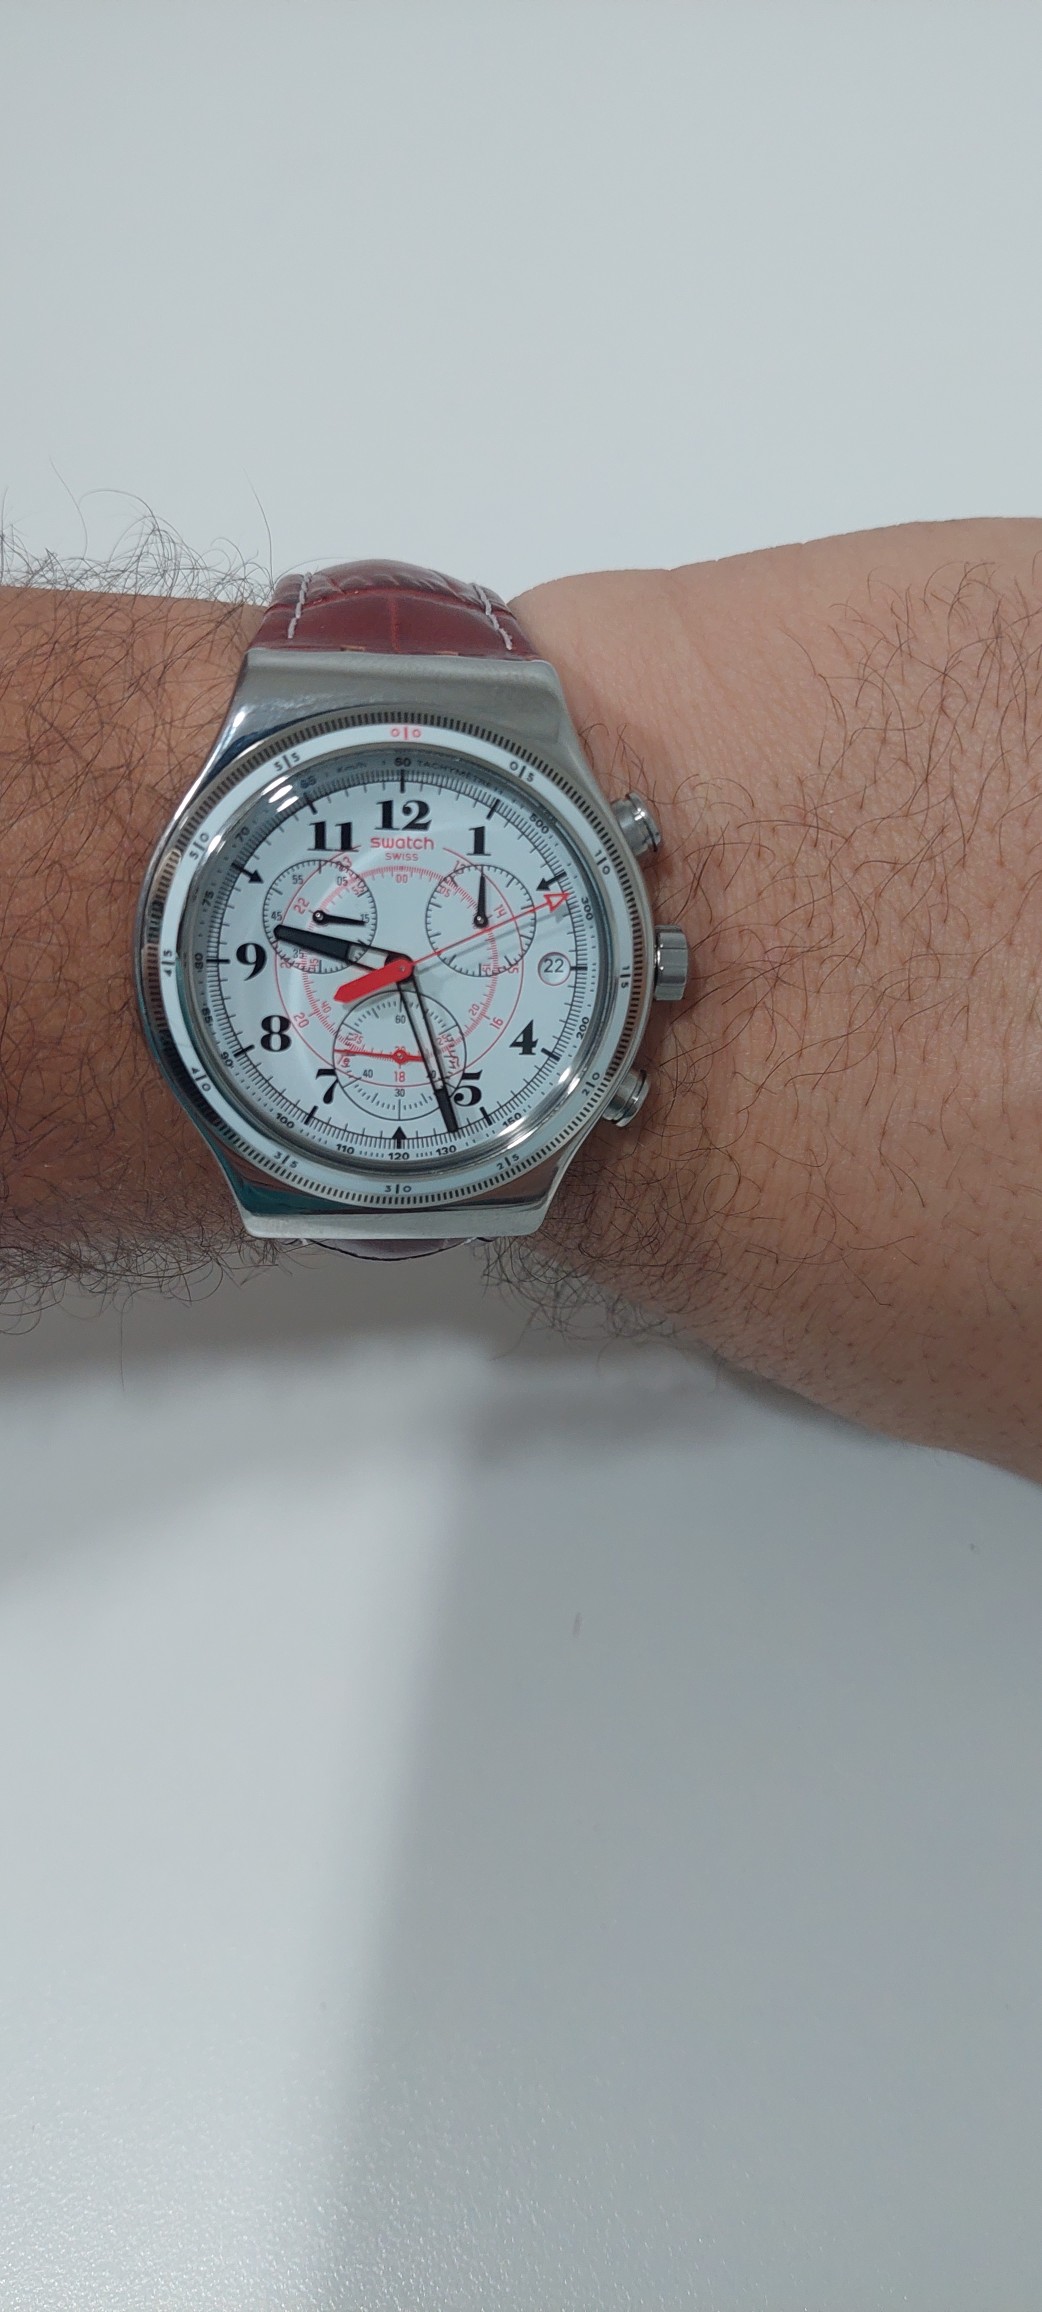 joyas, relojes y accesorios - Reloj swatch nuevo 2